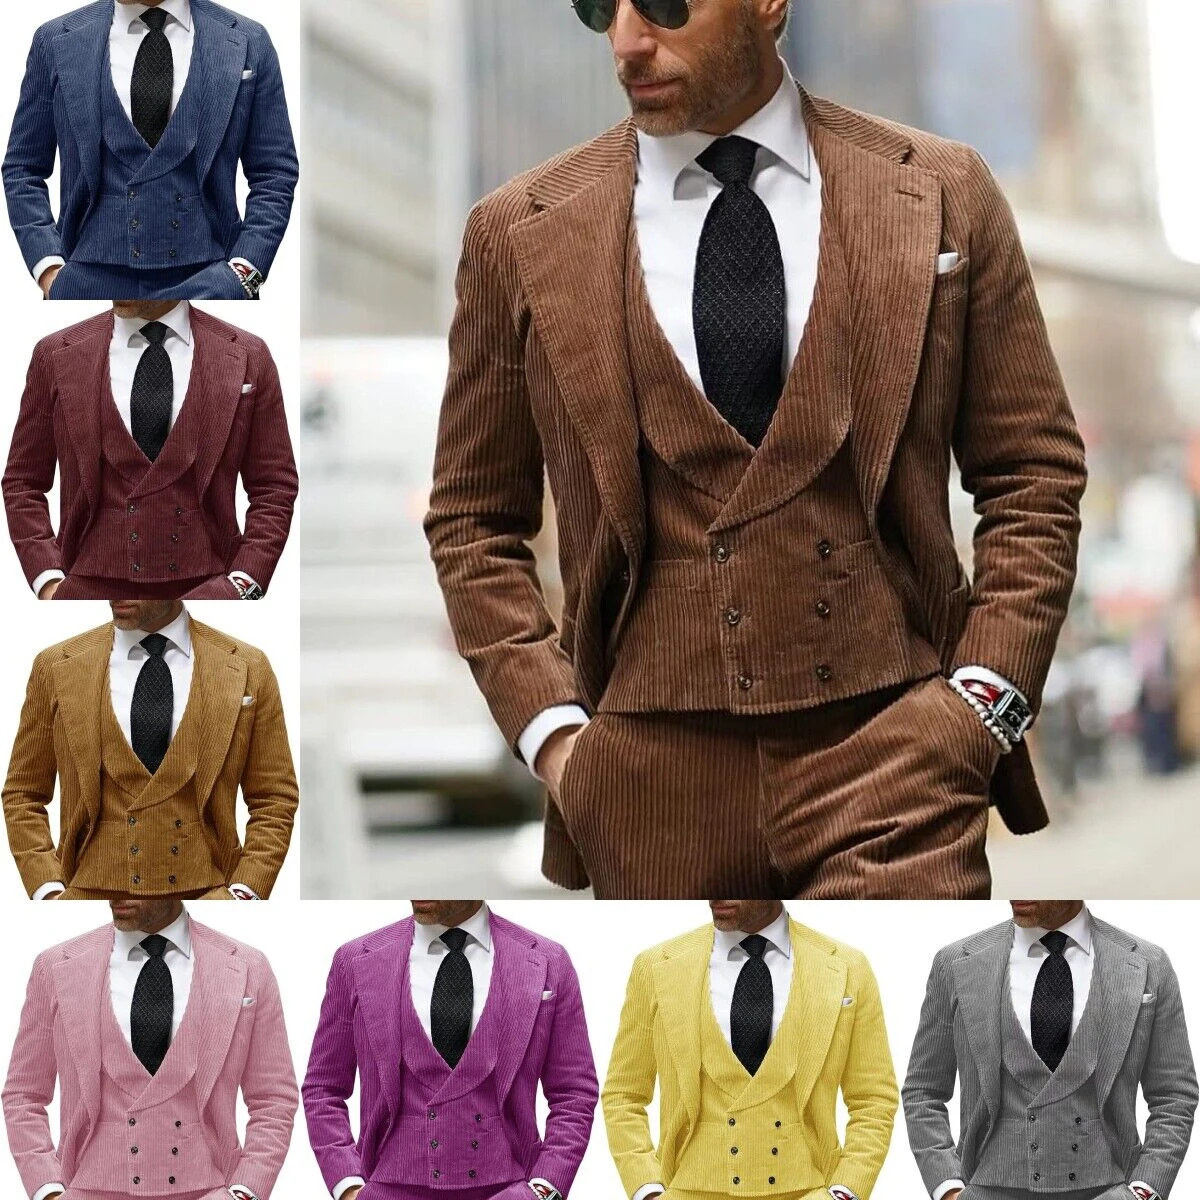 

Autumn Winter Men's Corduroy Suit Peak Lapel Tuxedos Slim Fit Groom Wear For Business Office 3 Pcs Jacket Vest Pants Customize